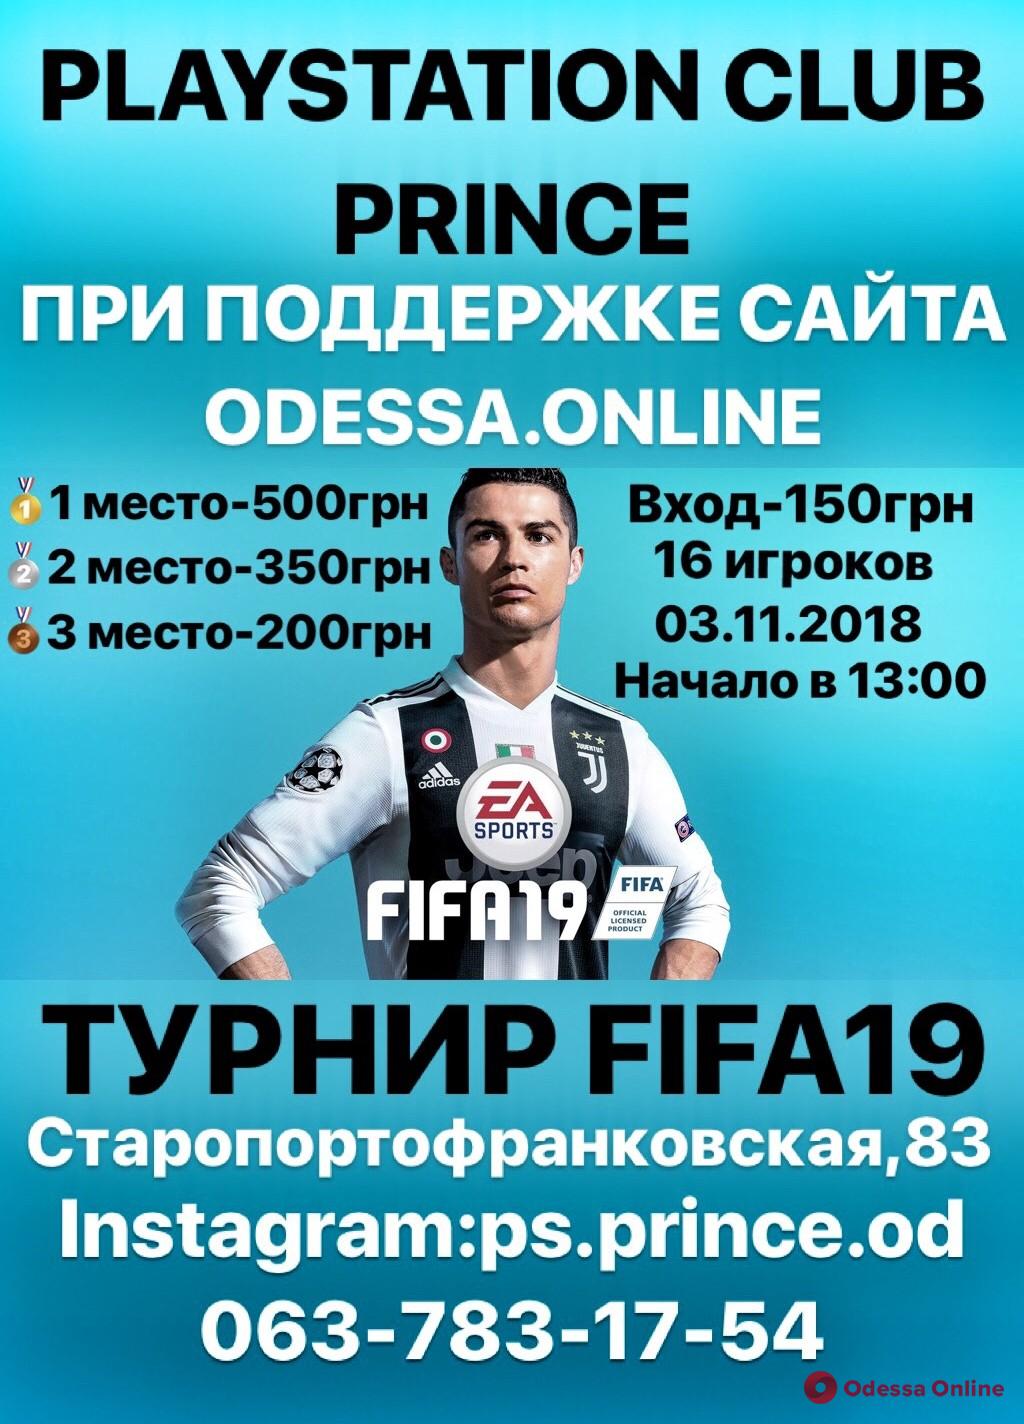 В Одессе состоится любительский киберфутбольный турнир по FIFA 19